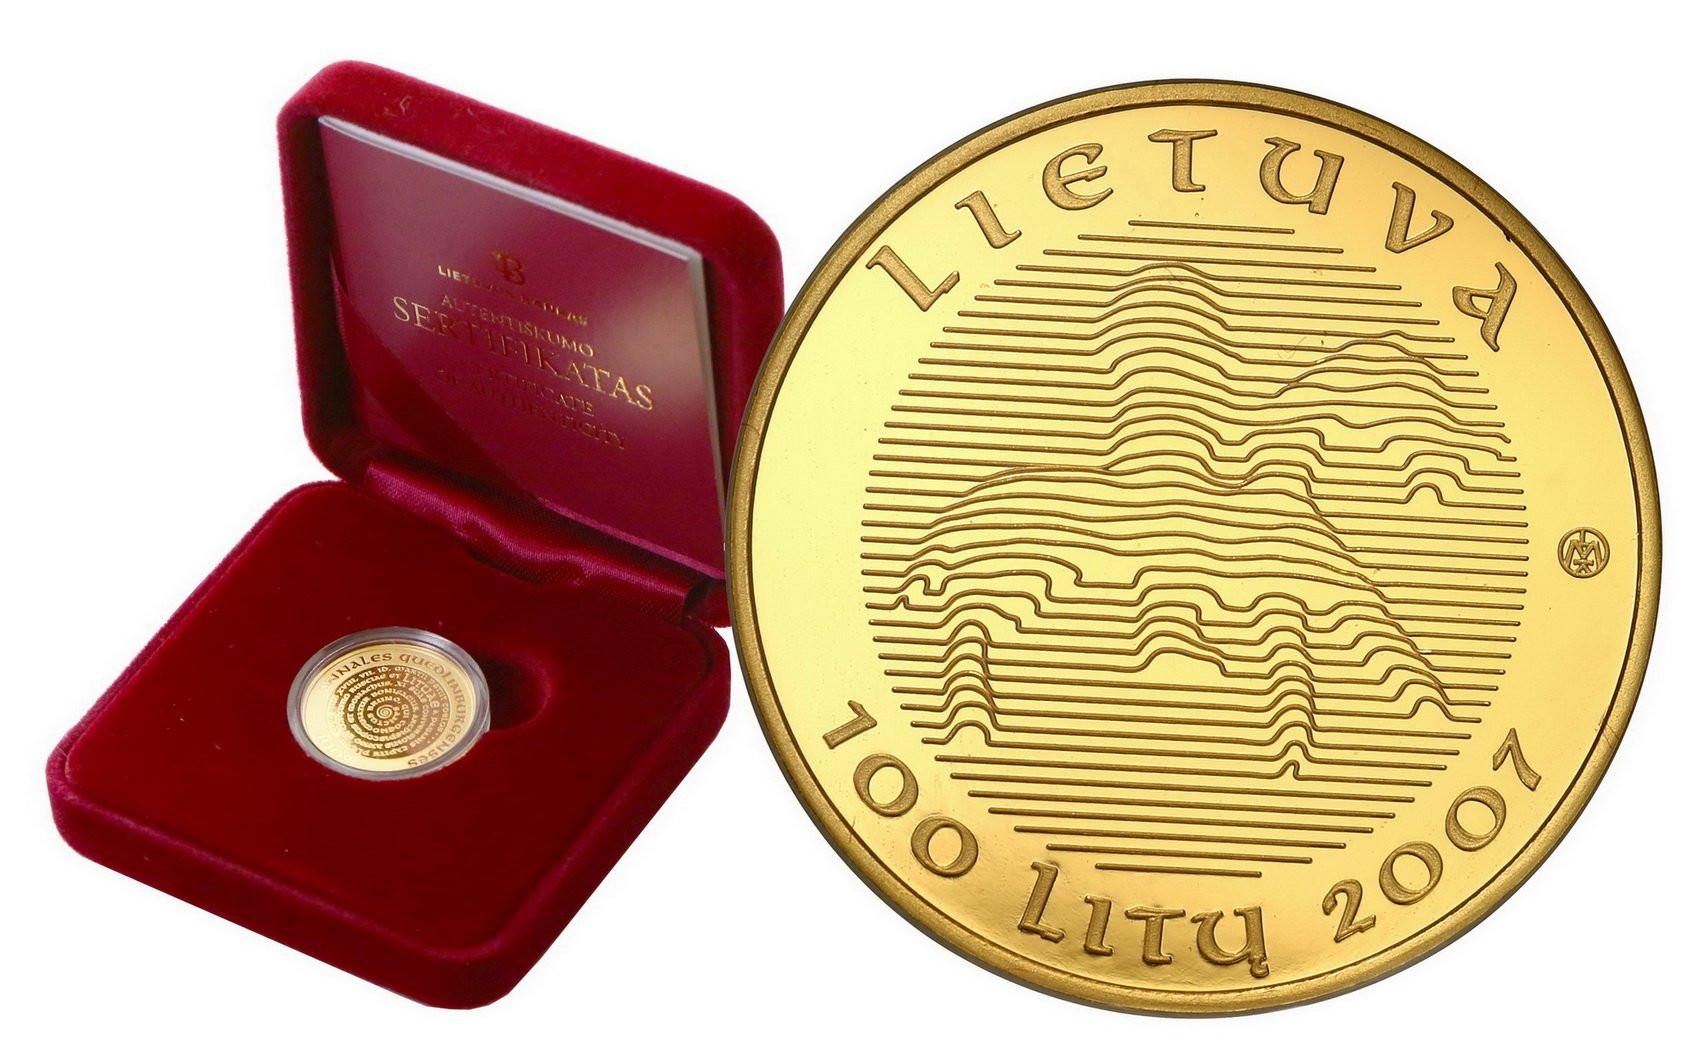 Litwa. 100 Litów 2007 1000-lecie nazwy państwa Litwa - 1/4 uncji złota